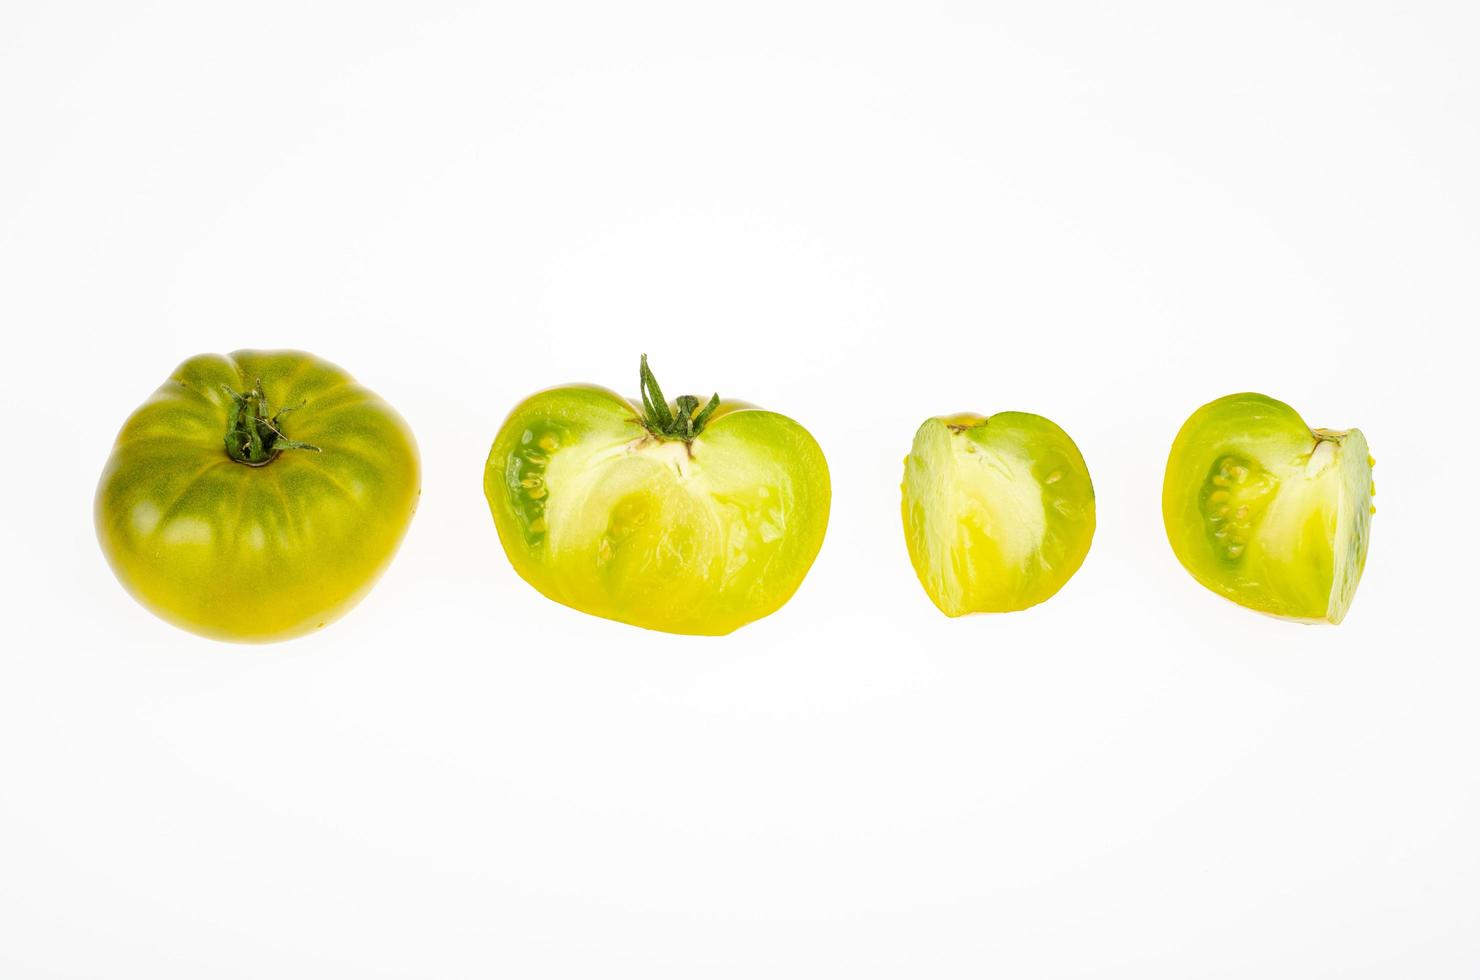 frutas inteiras e fatias de cor verde-amarelo de frutos de tomate maduro, isolados no fundo branco. foto de estúdio.